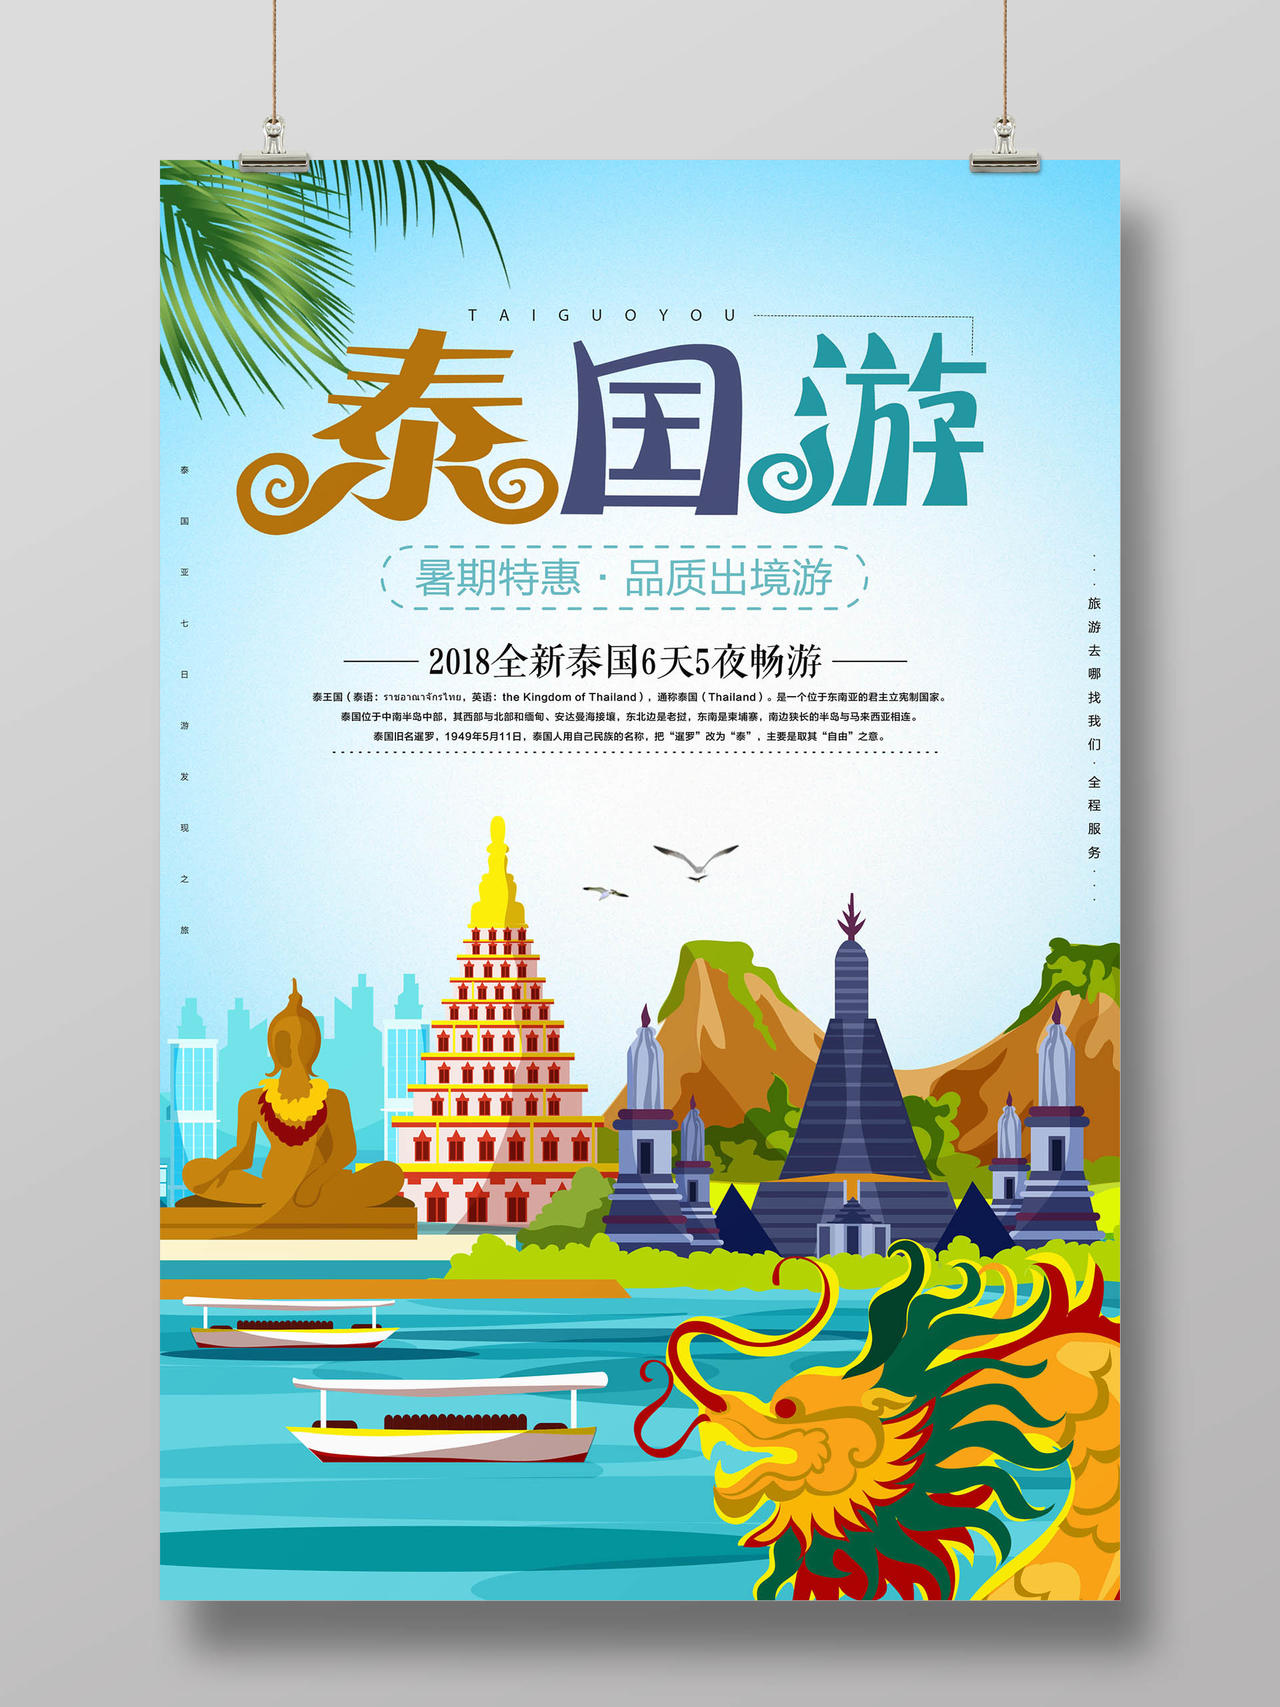 竖版扁平化风格泰国旅游宣传海报设计 